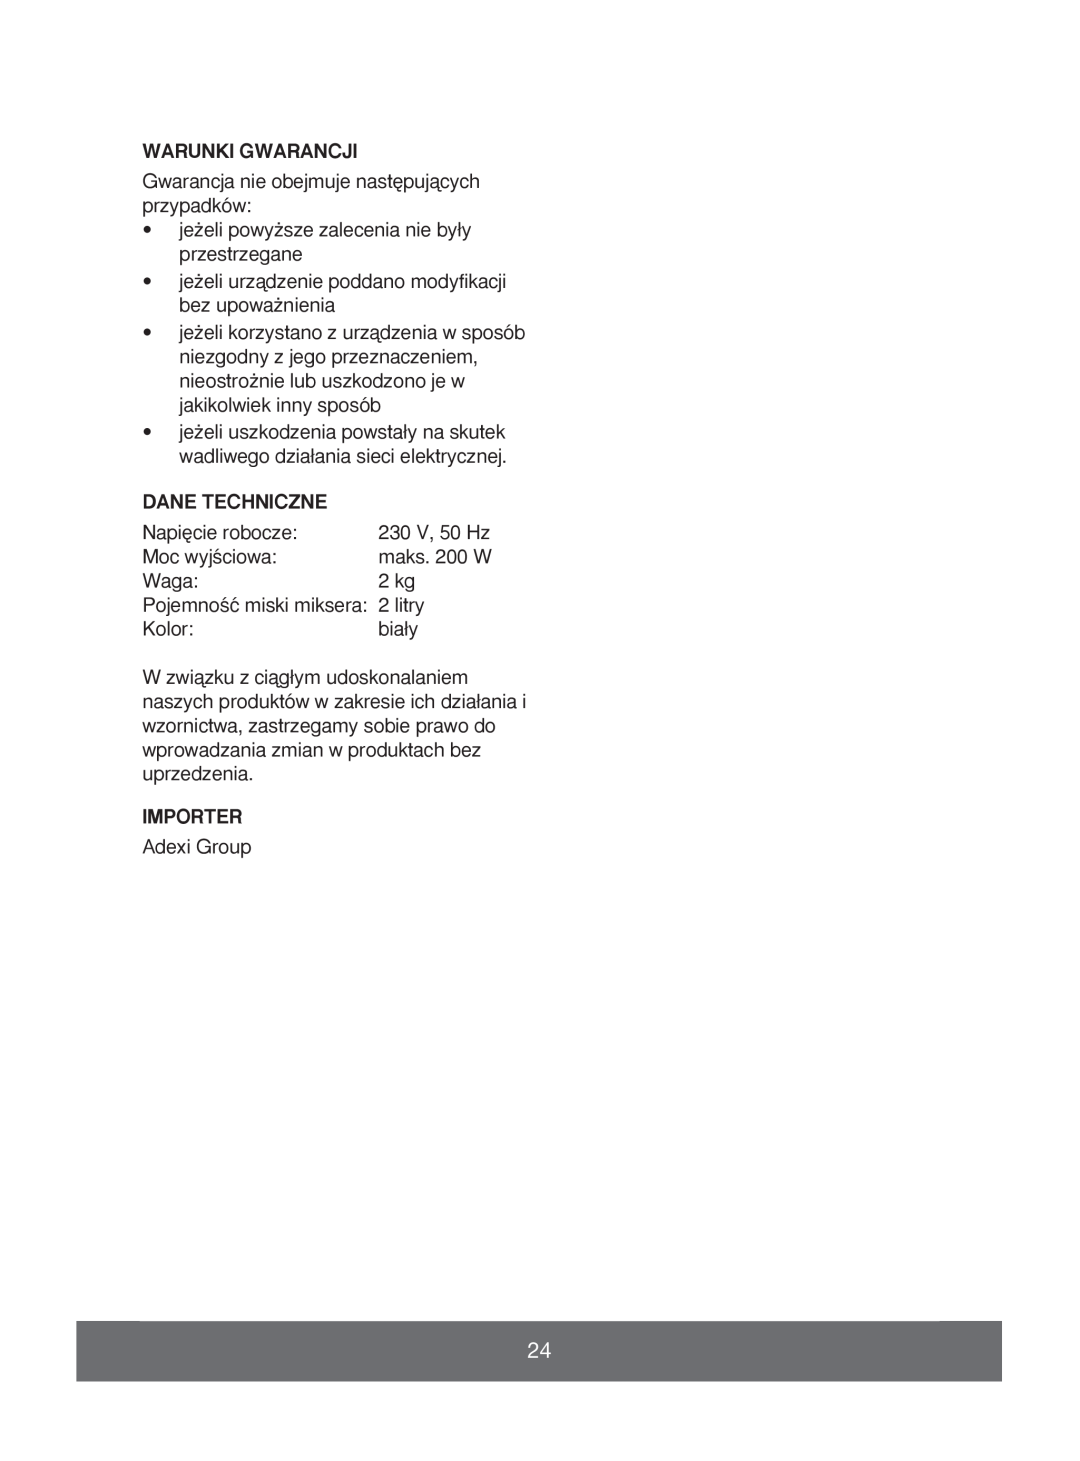 Melissa 646-039 manual Warunki Gwarancji, Dane Techniczne, Importer 